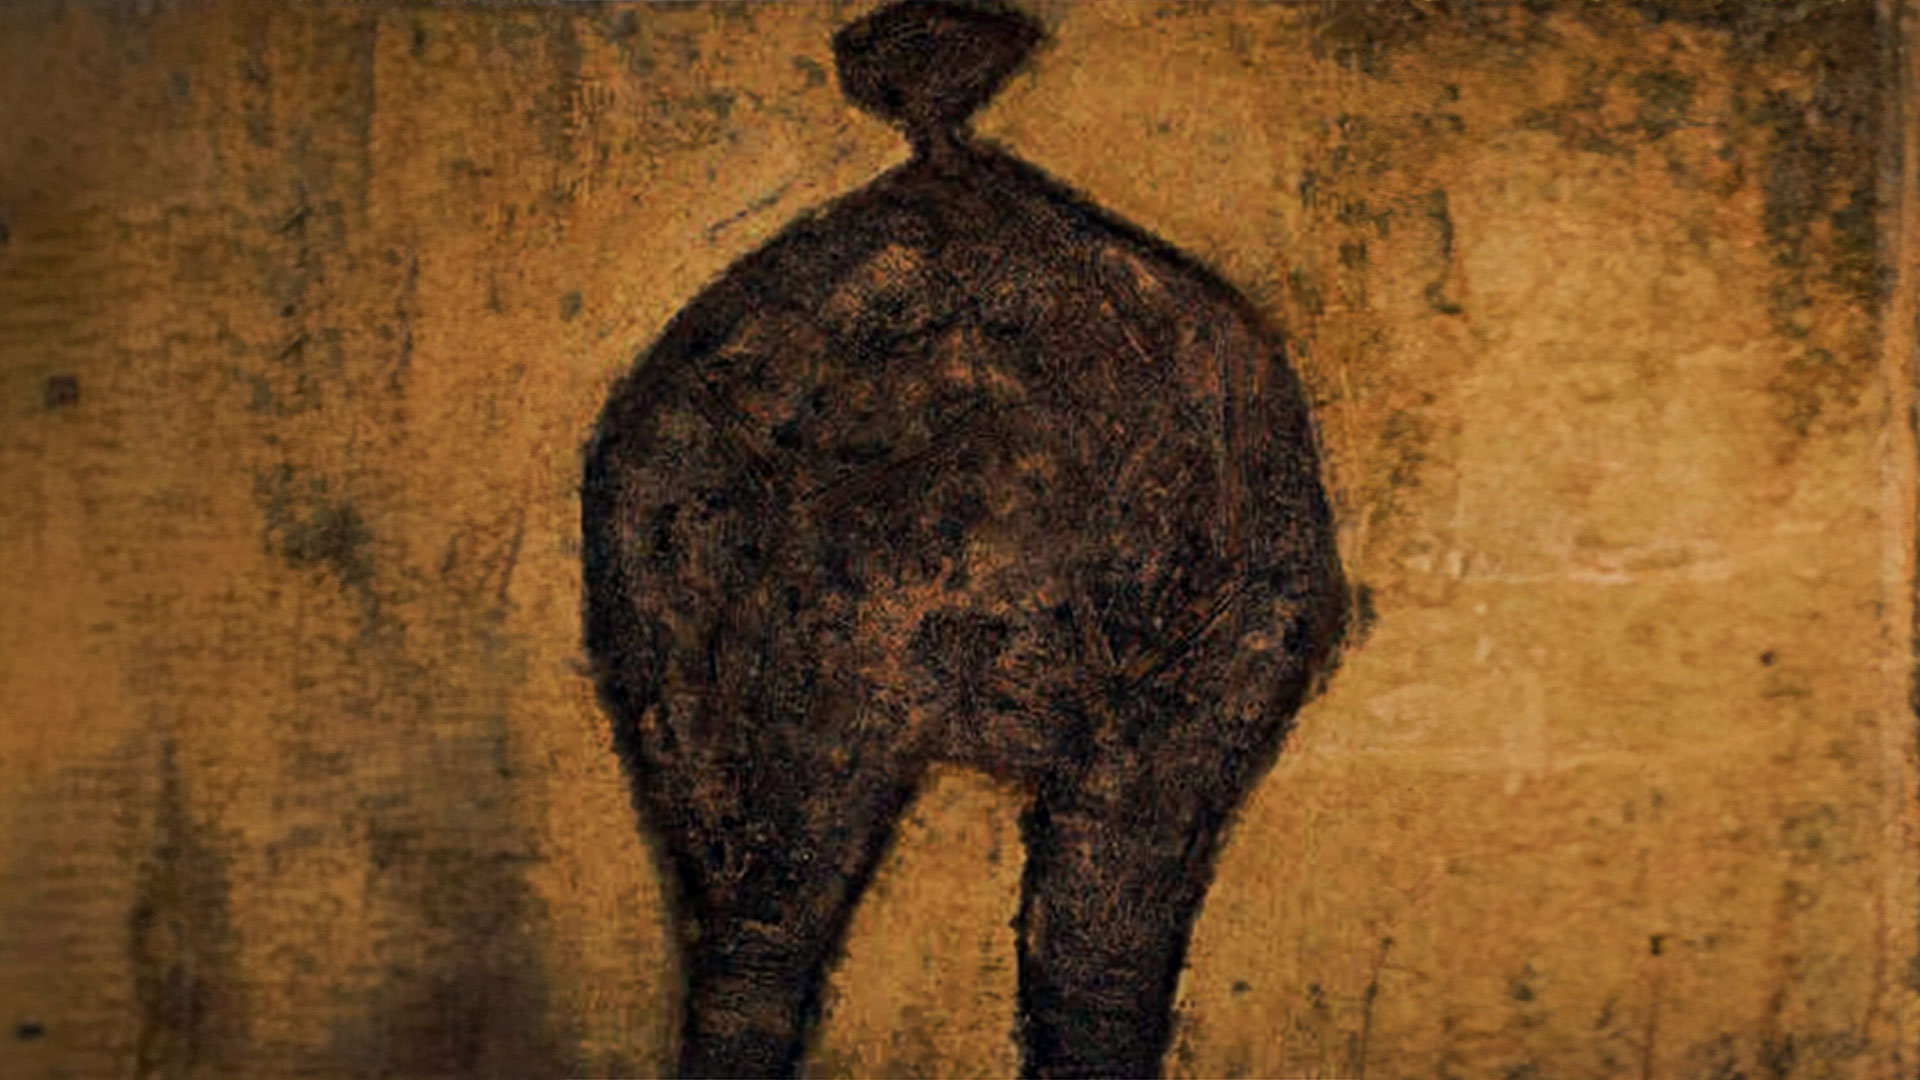 لوحة 6/ امرأة بجنس متحوّل/ جان ديبوفيه 1950 